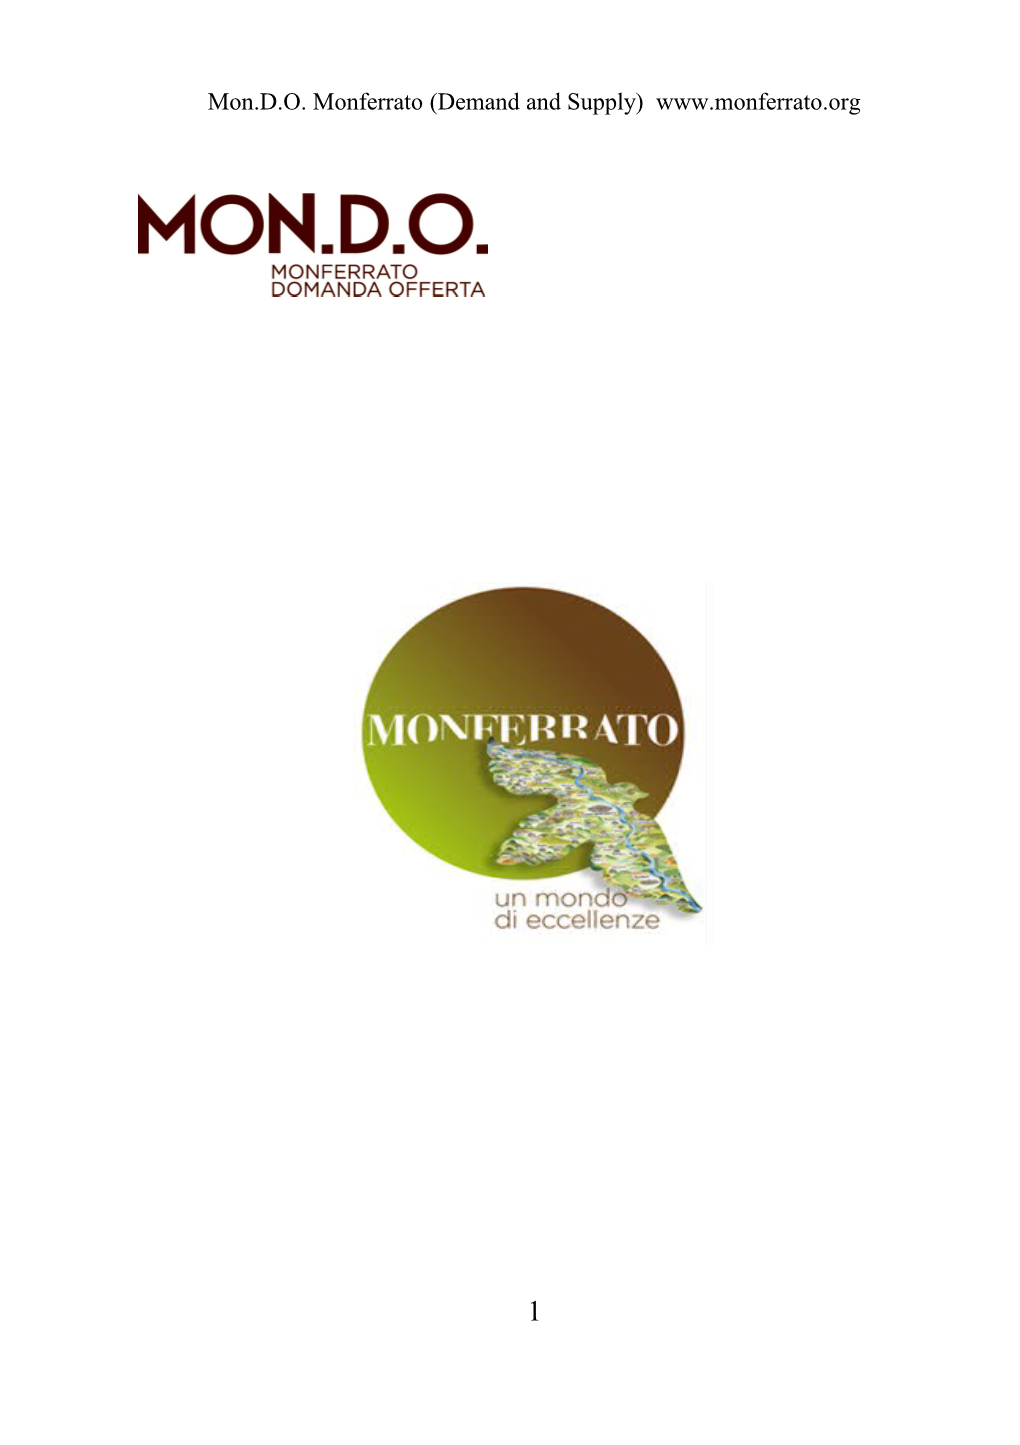 Mon.D.O. Monferrato (Demand and Supply)